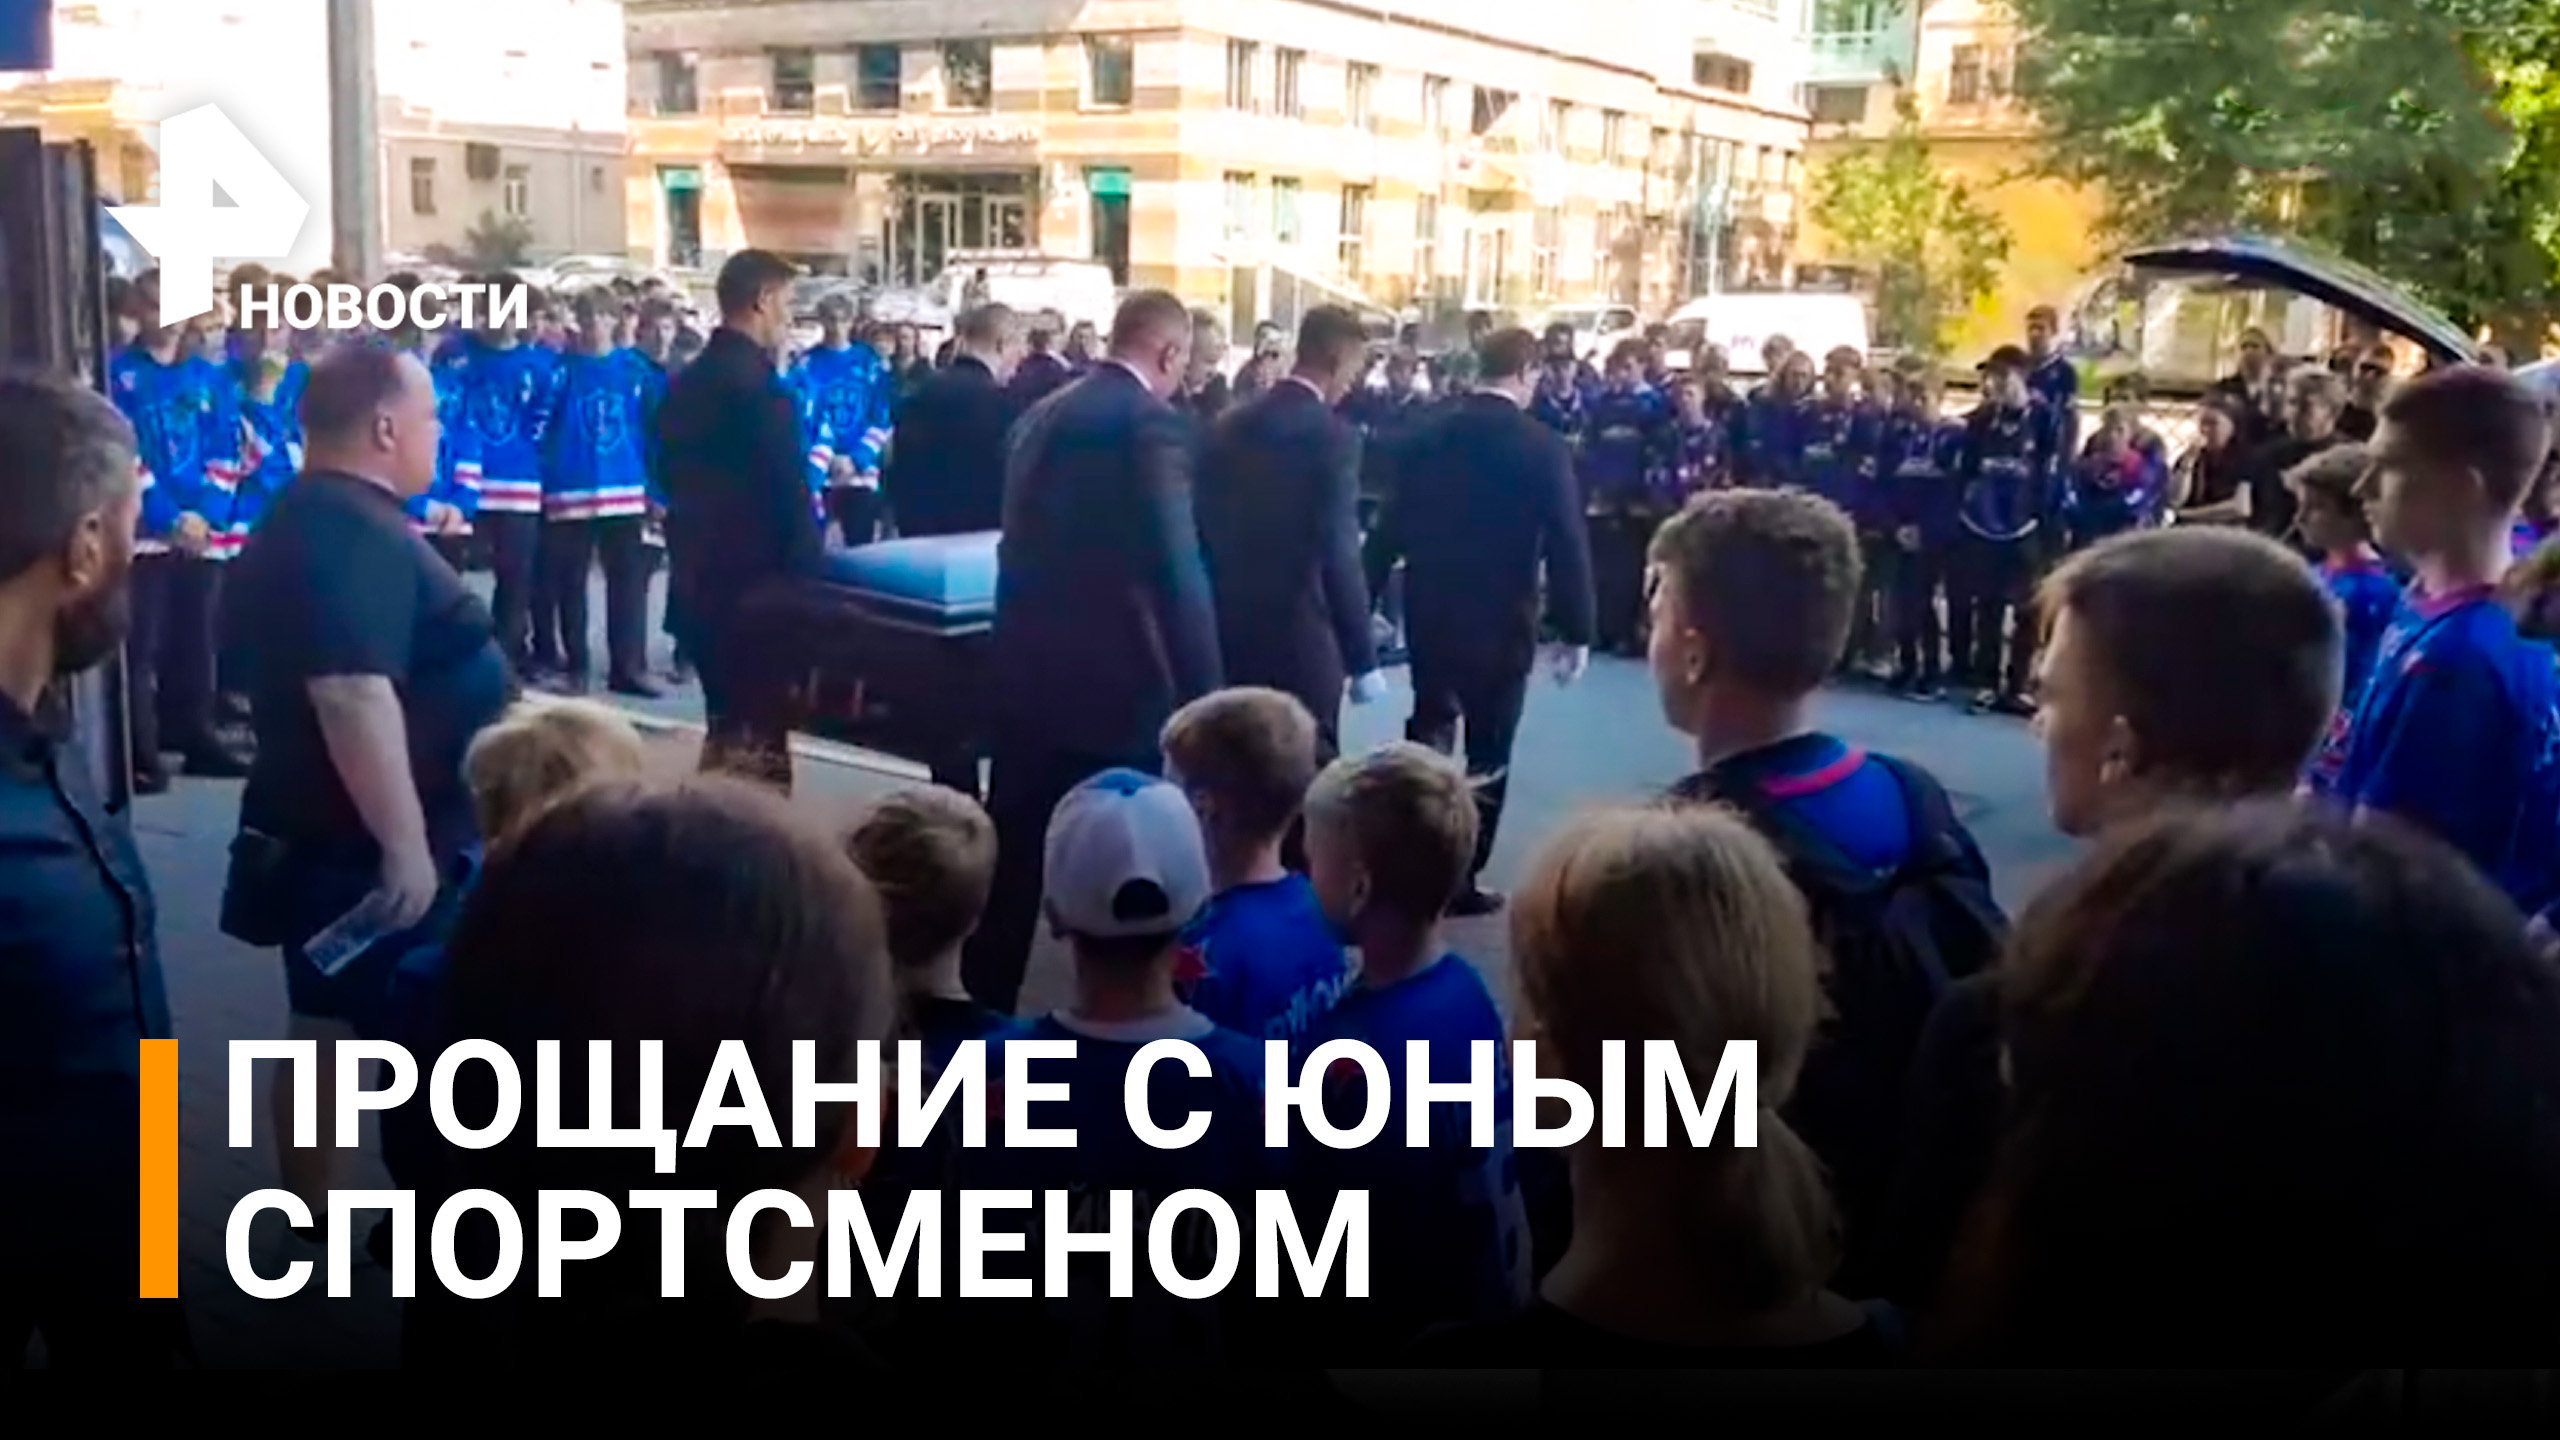 Прощание с юным хоккеистом Всеволодом Малковым проходит сегодня в Санкт-Петербурге / РЕН Новости